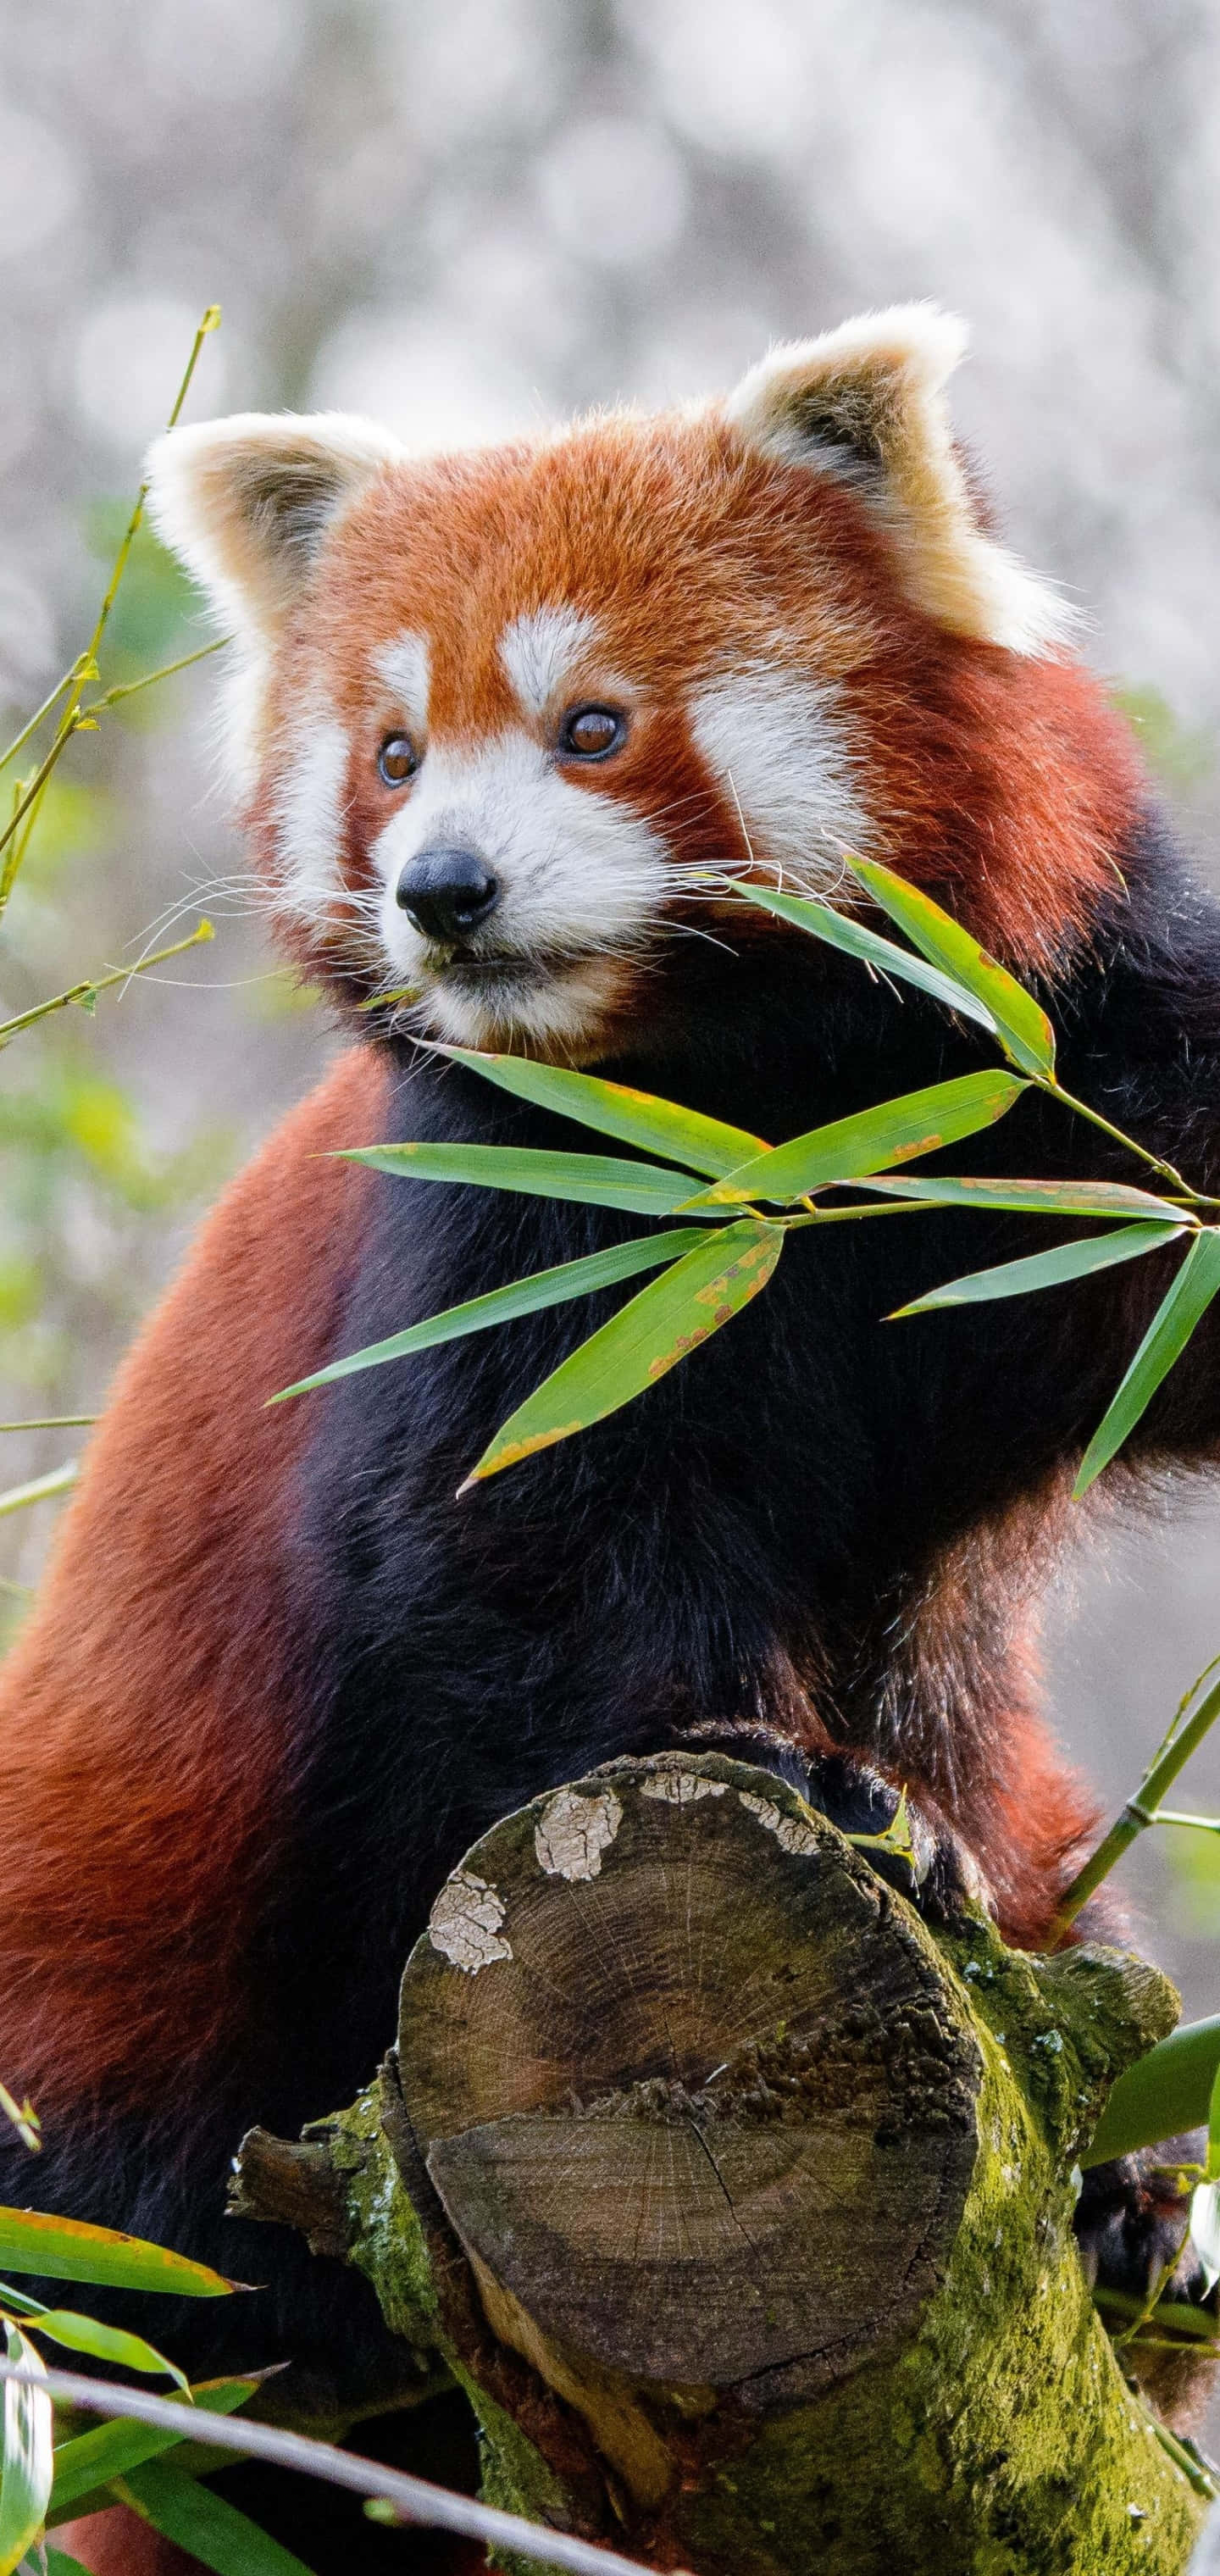 "The Red Panda Enjoying Nature"